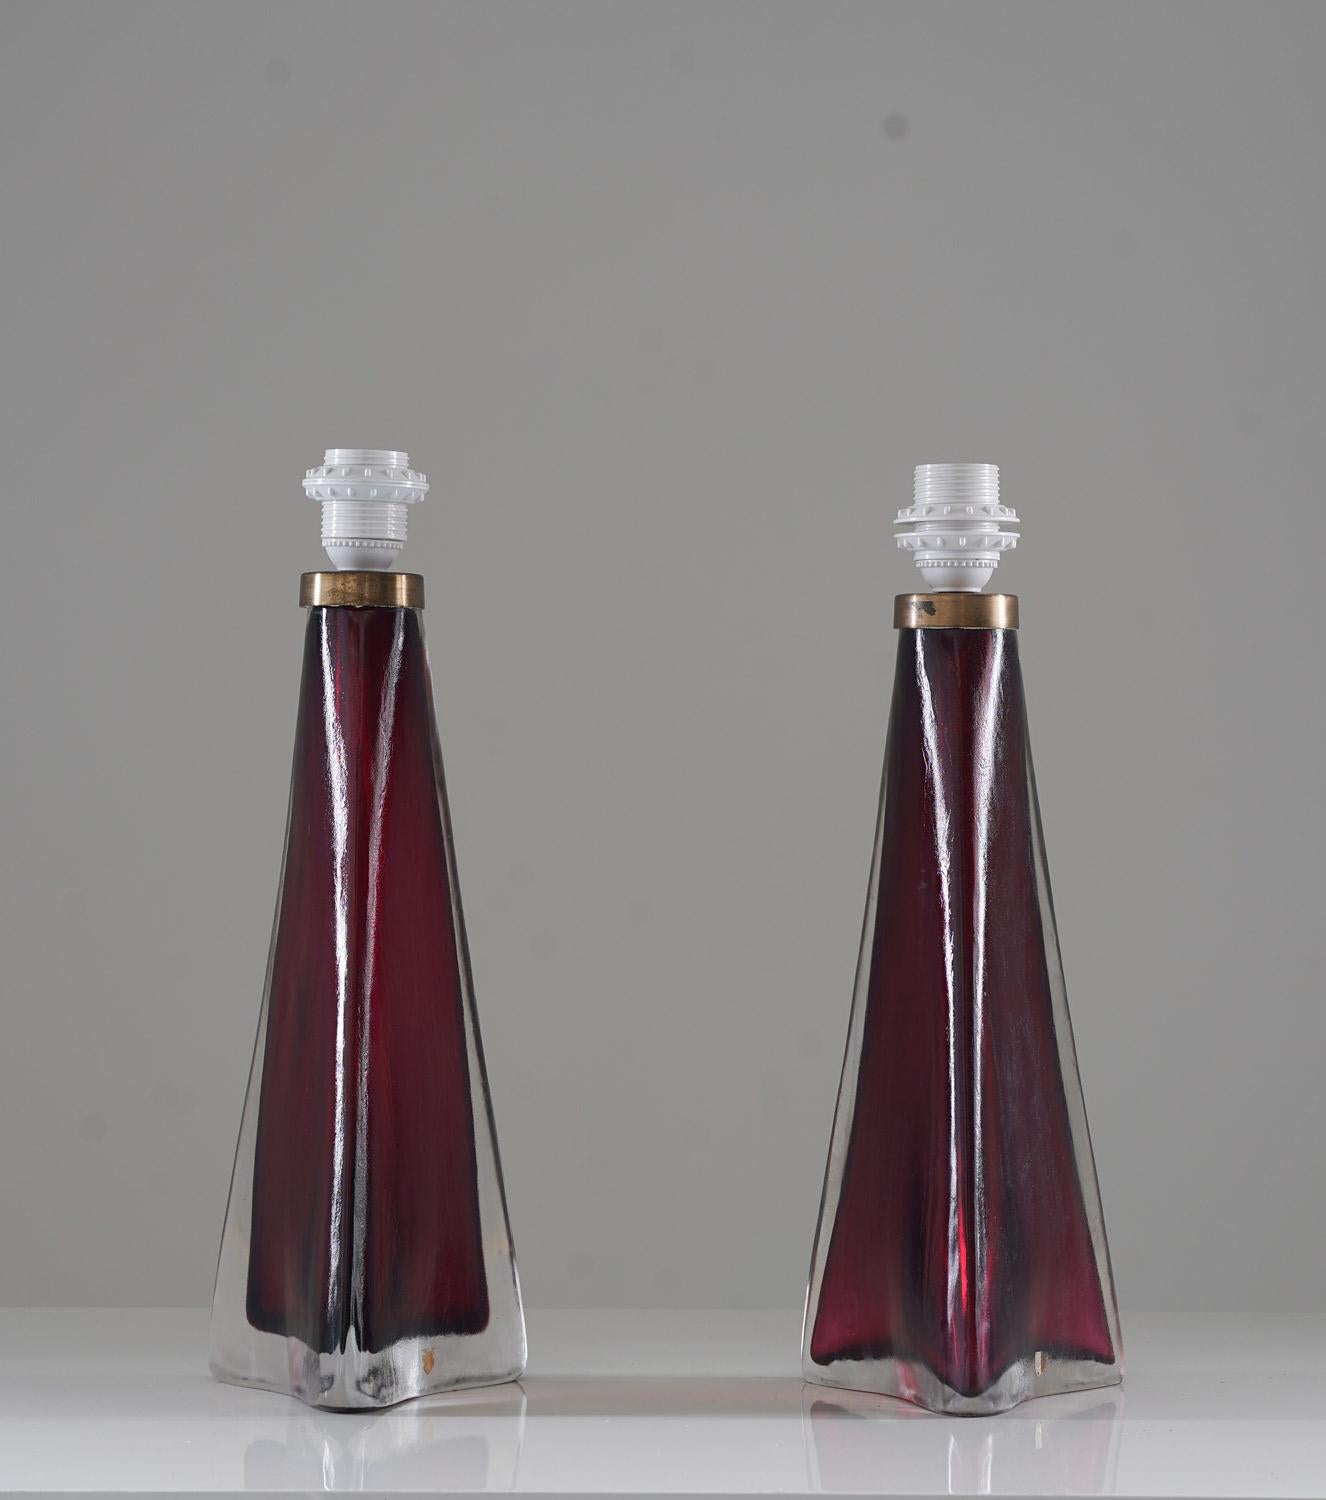 Ein Paar große Tischlampen aus Kristall, Modell RD1319 von Carl Fagerlund für Orrefors, Schweden. 
Die Lampen haben eine dreieckige Form und eine atemberaubende weinrote Farbe.
Zustand: Sehr guter Originalzustand mit Alters- und Gebrauchsspuren